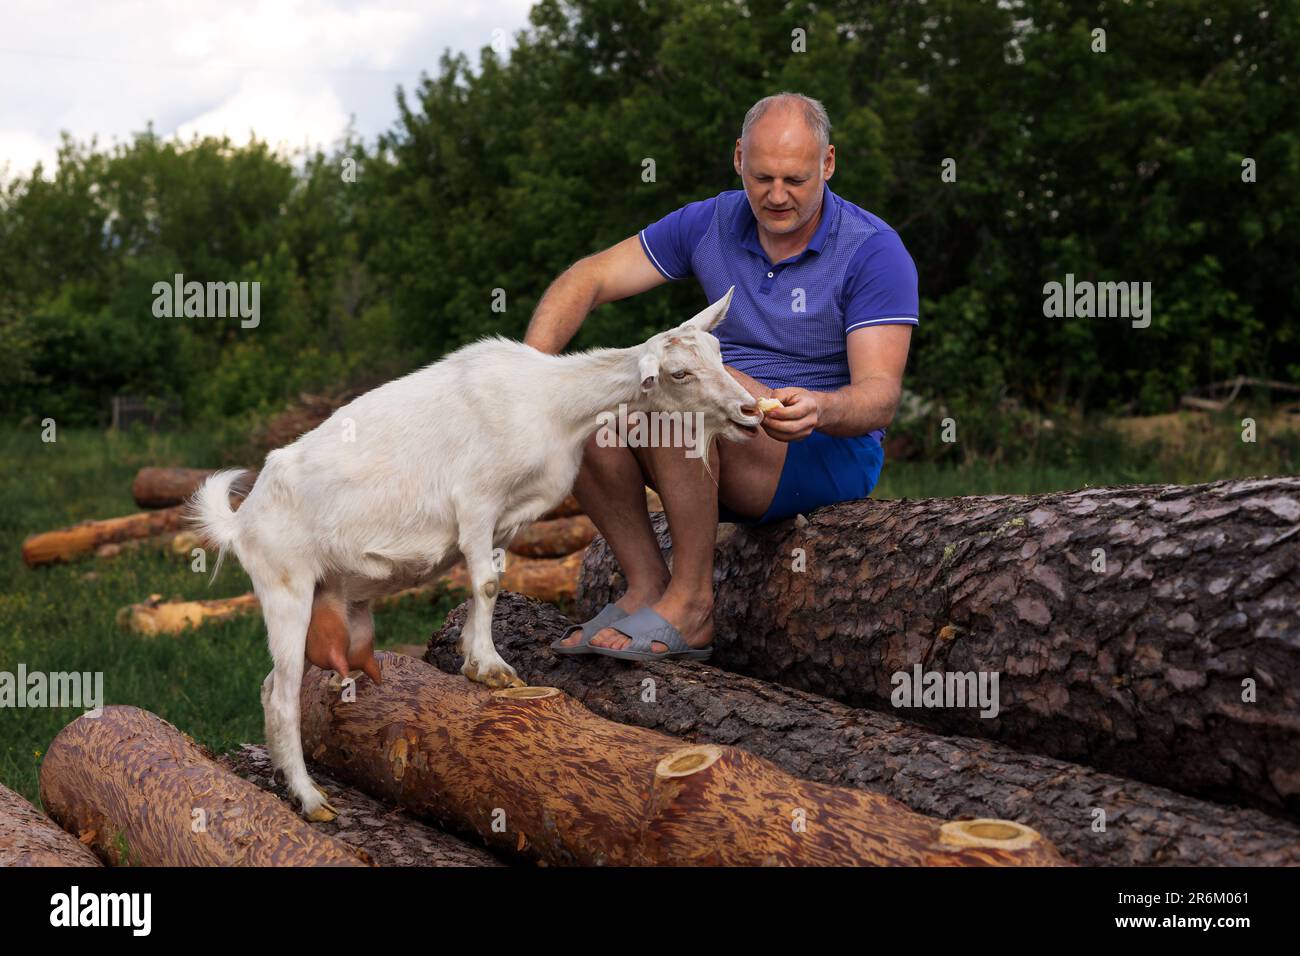 un homme d'âge moyen nourrit des pétards de chèvre blancs, assis sur des bûches et des sourires Banque D'Images